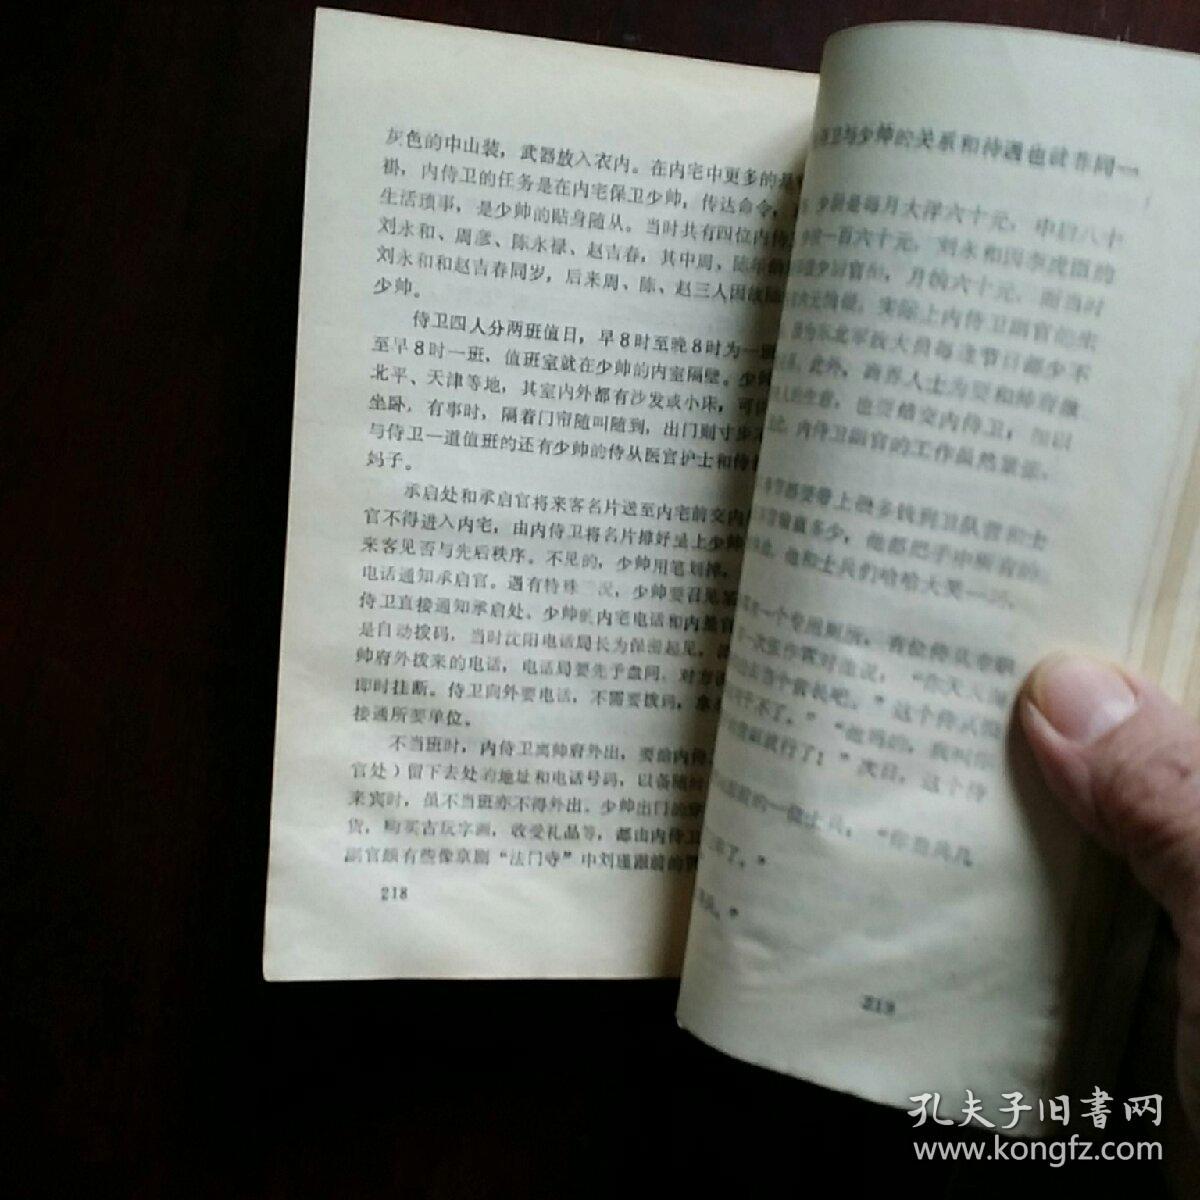 金陵昙梦    郑丰  编   长江文艺   1993年一版一印30000册  有皱痕。